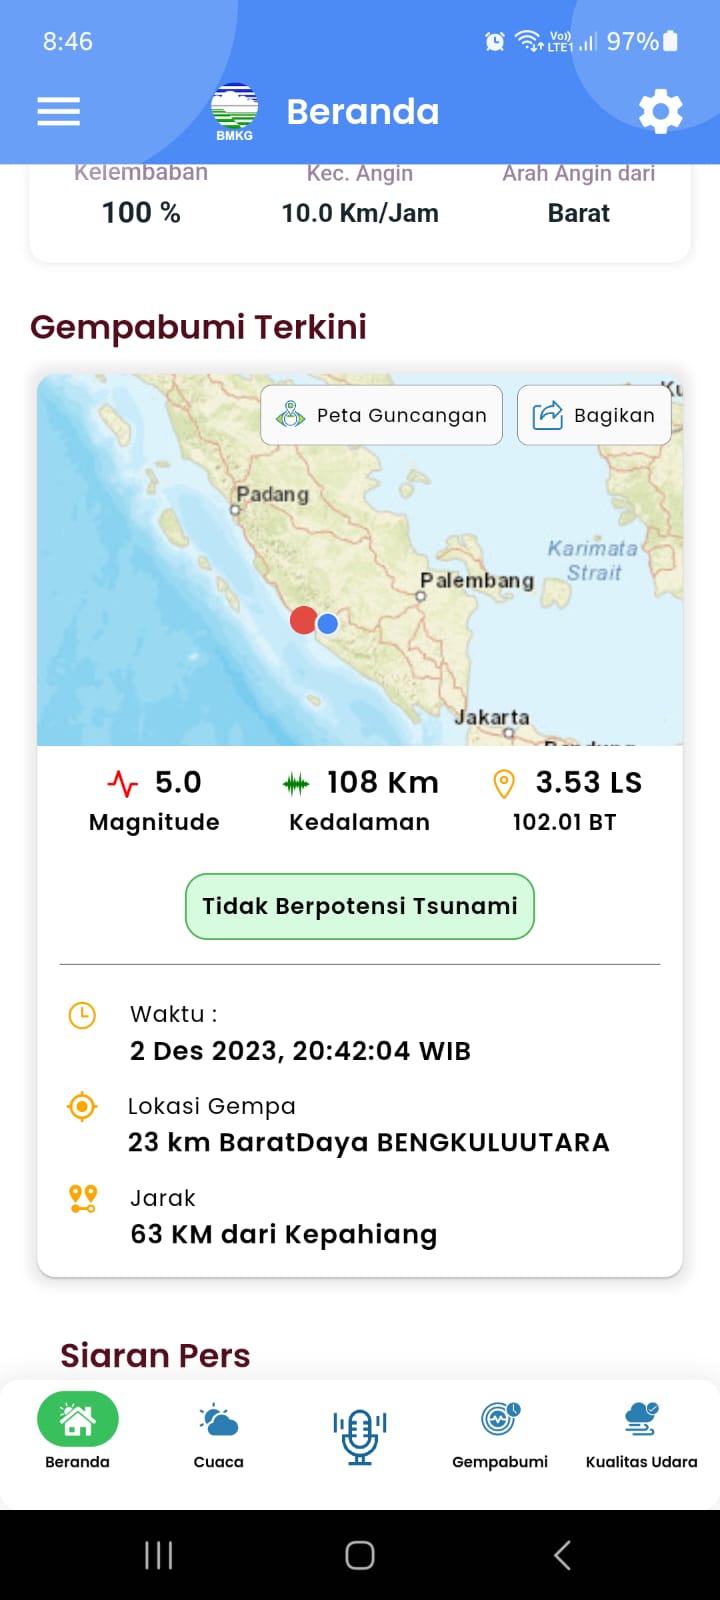 BREAKING NEWS: Gempa Bumi Tektonik Terjadi di Pantai Barat Bengkulu Utara